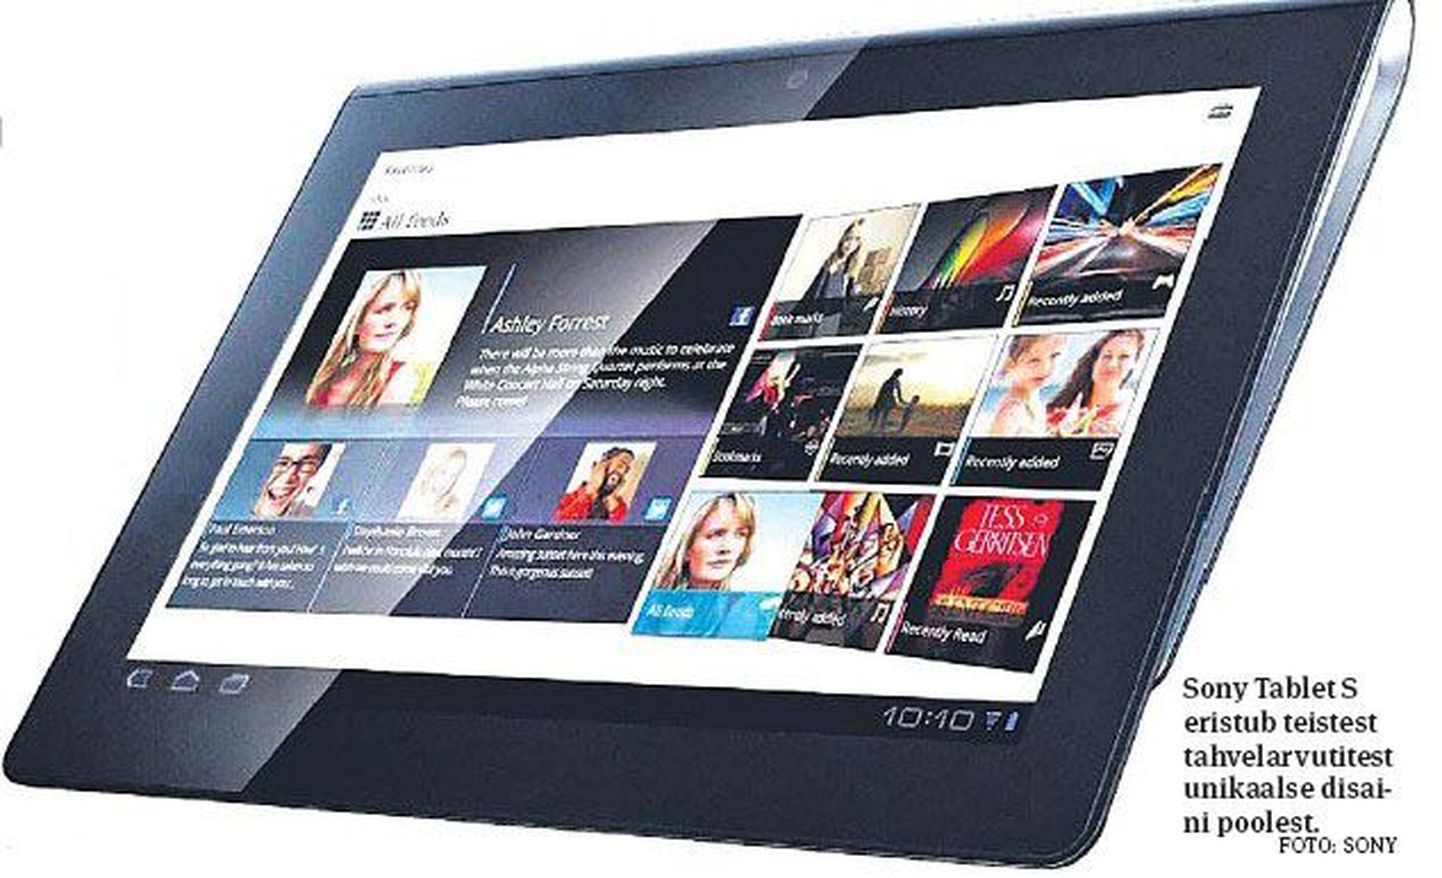 Sony Tablet S eristub teistest tahvelarvutitest unikaalse disaini poolest.